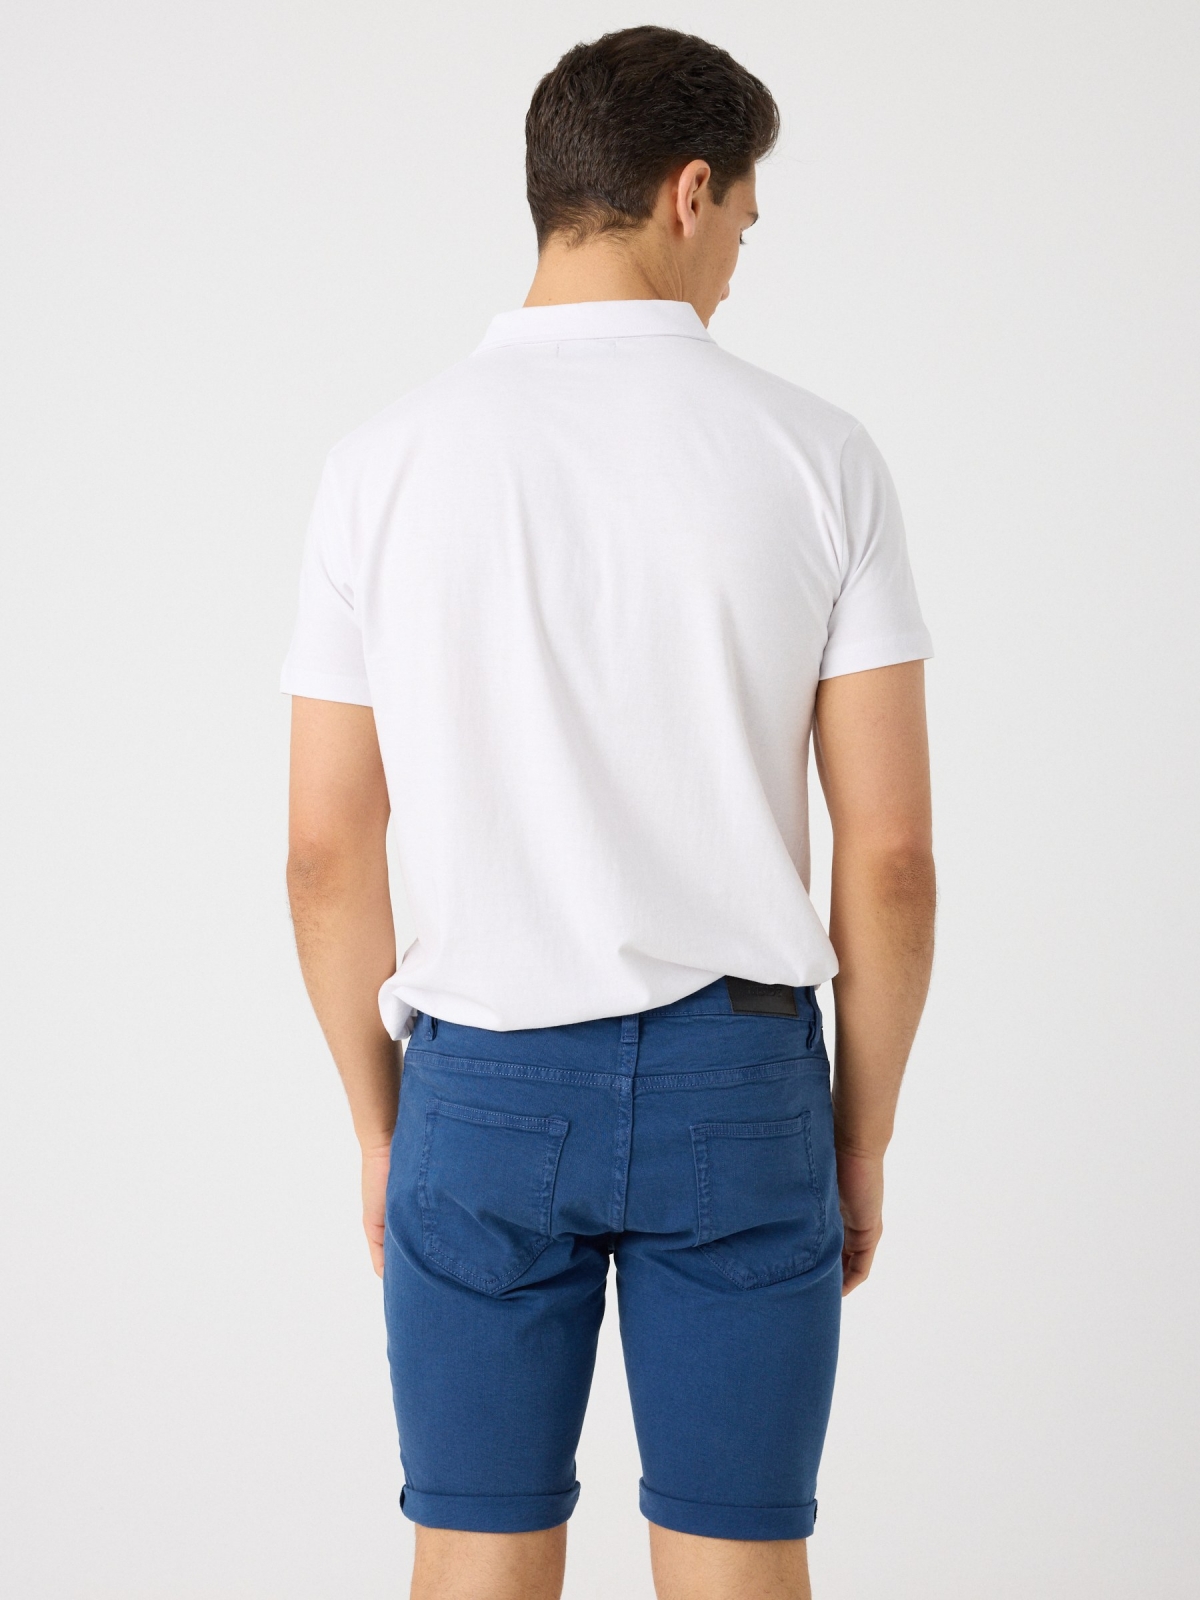 Coloured denim shorts indigo middle back view